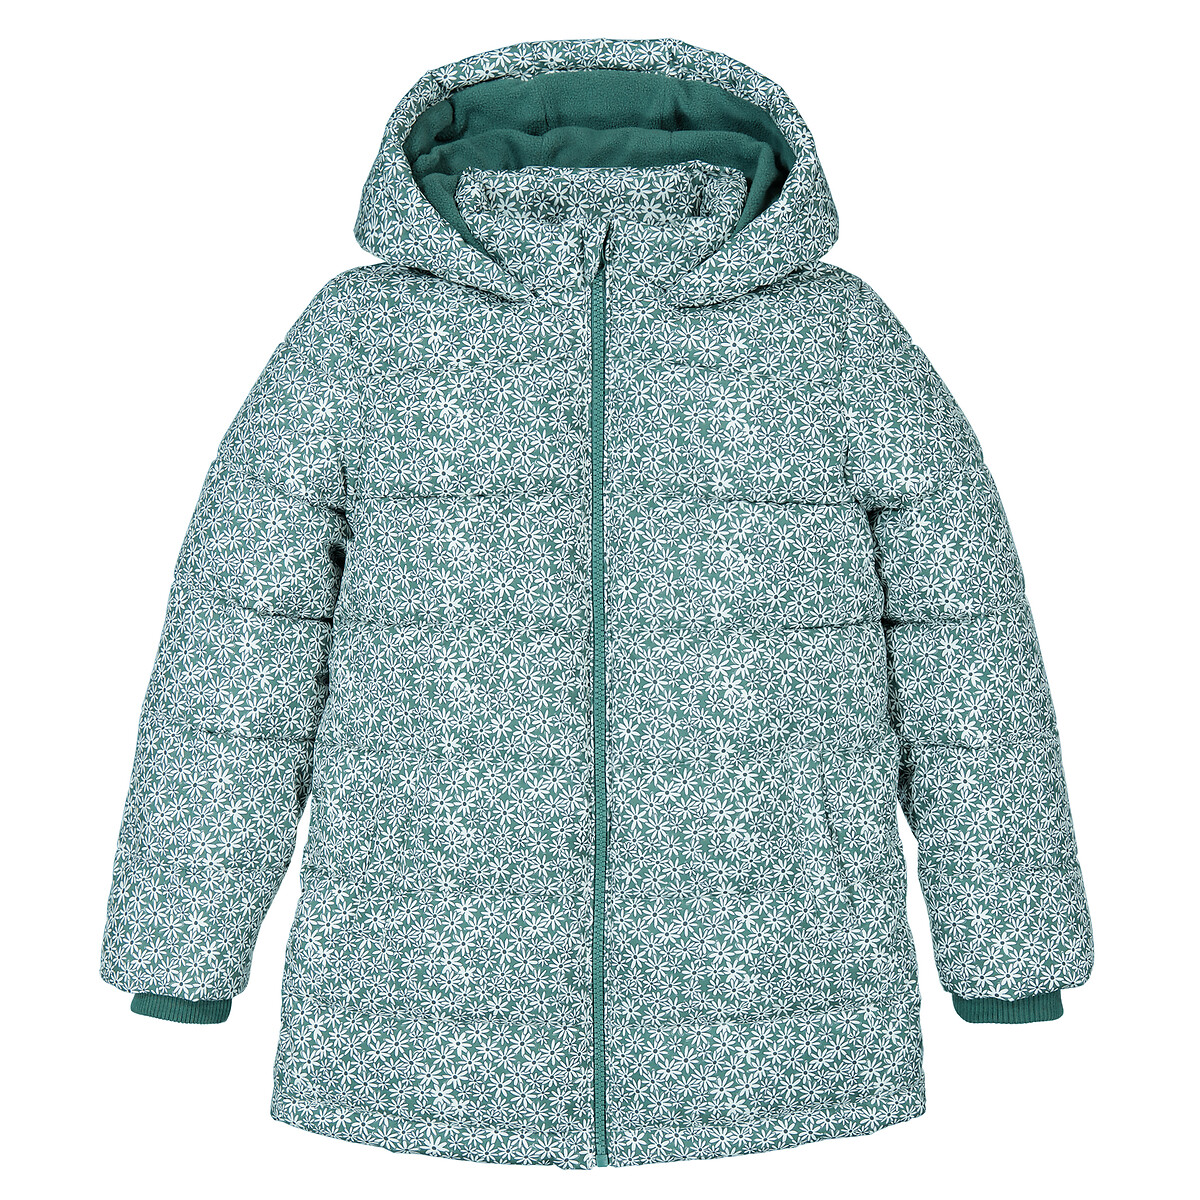 Куртка Стеганая утепленная с капюшоном цветочный принт 10 лет - 138 см зеленый LaRedoute, размер 10 лет - 138 см - фото 3